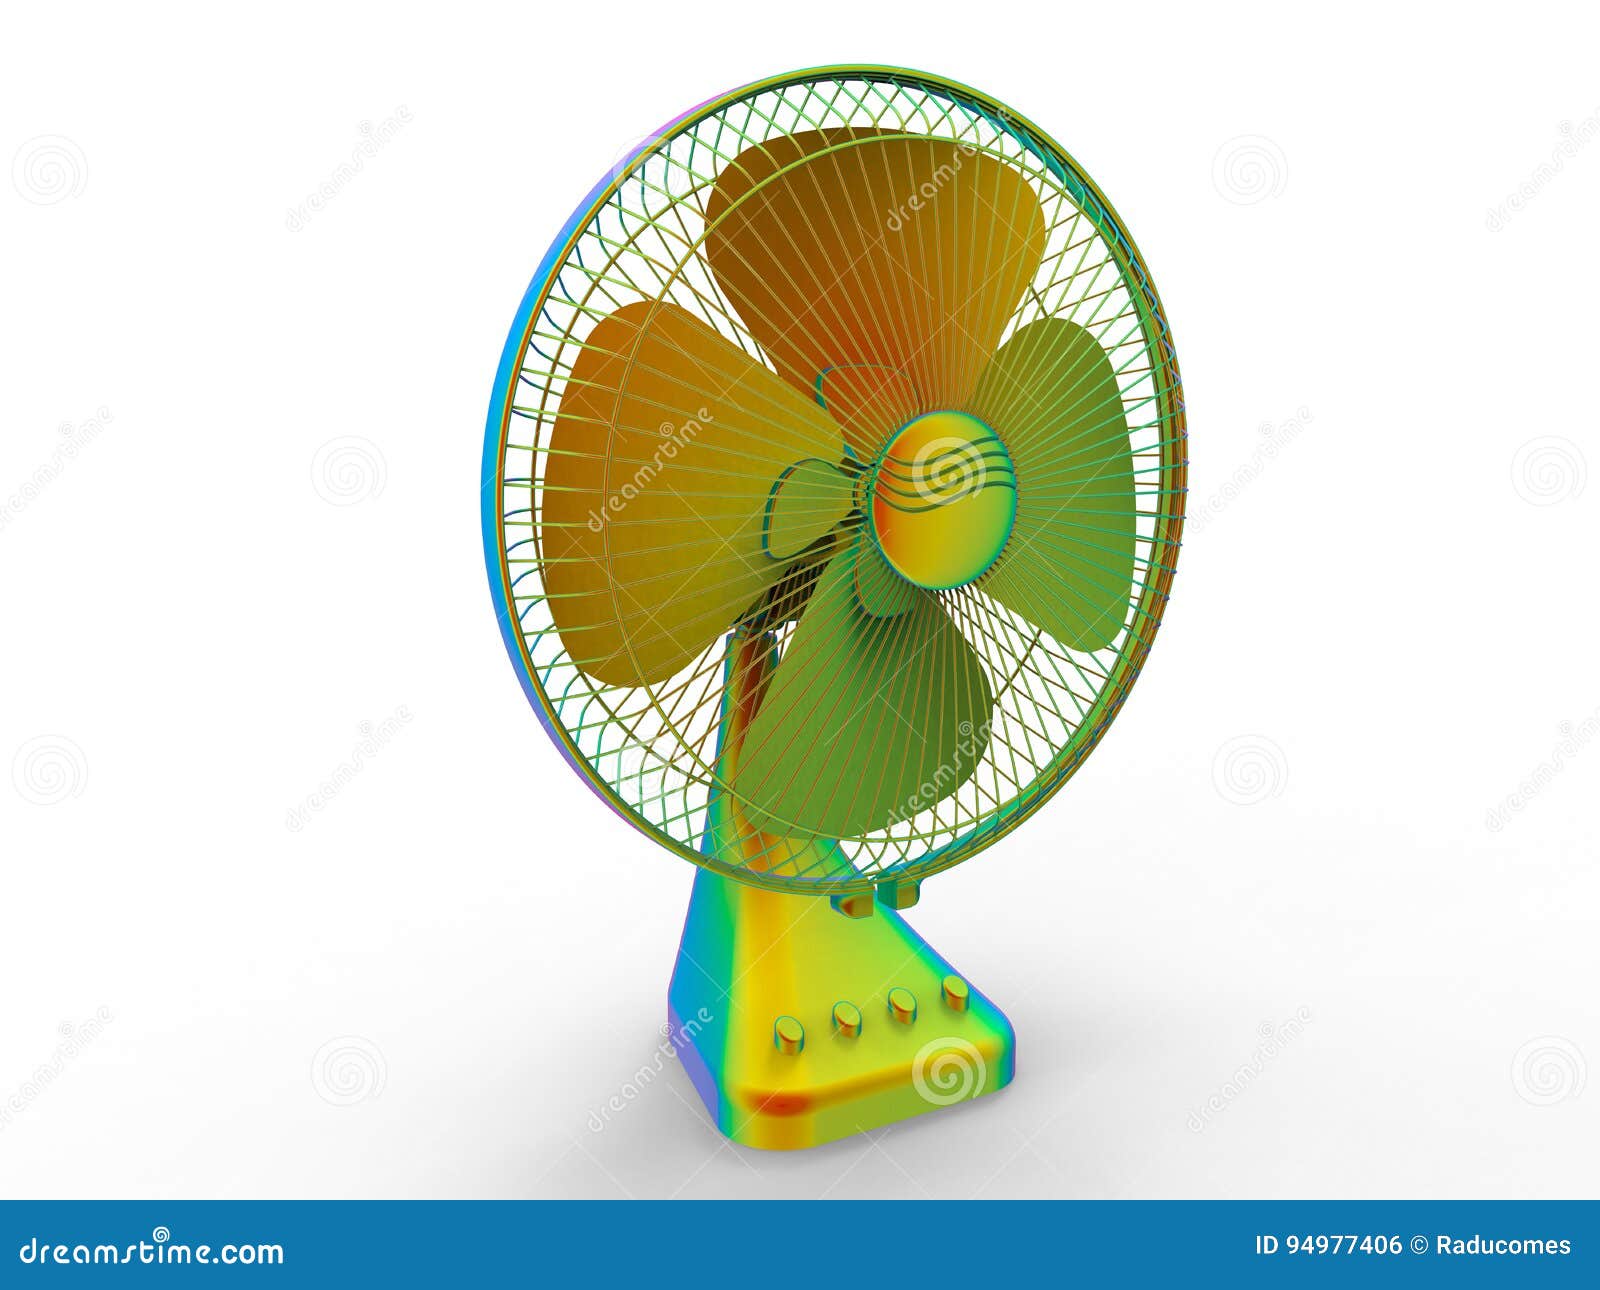 cooling fan — Traducere în română - TechDico